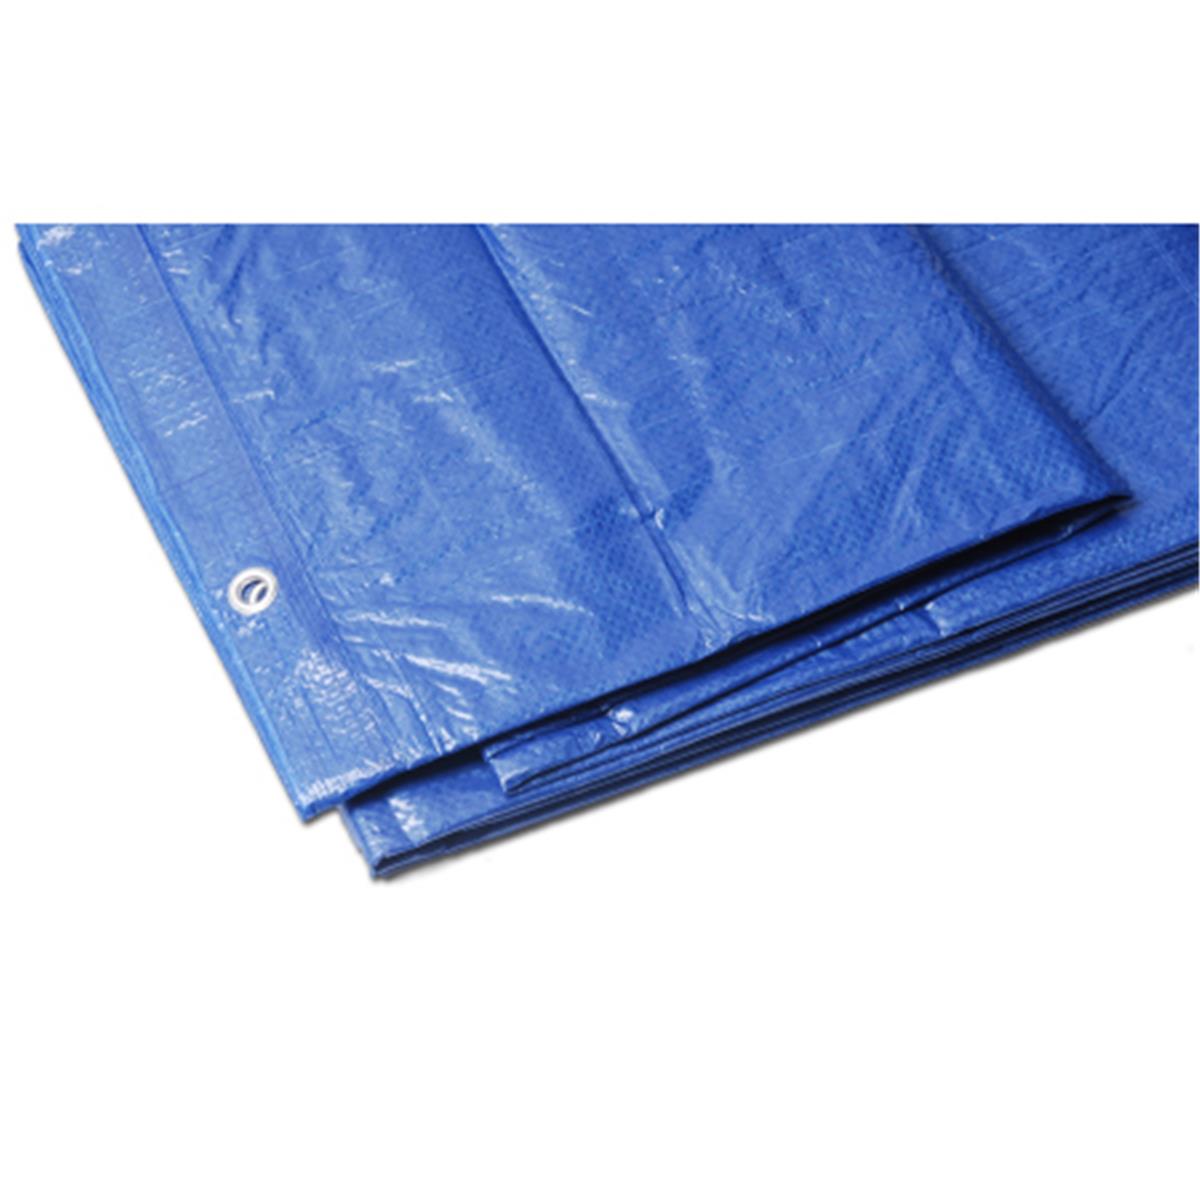 T70 66030 16 X 20 Ft. Polyethylene Tarp, Blue